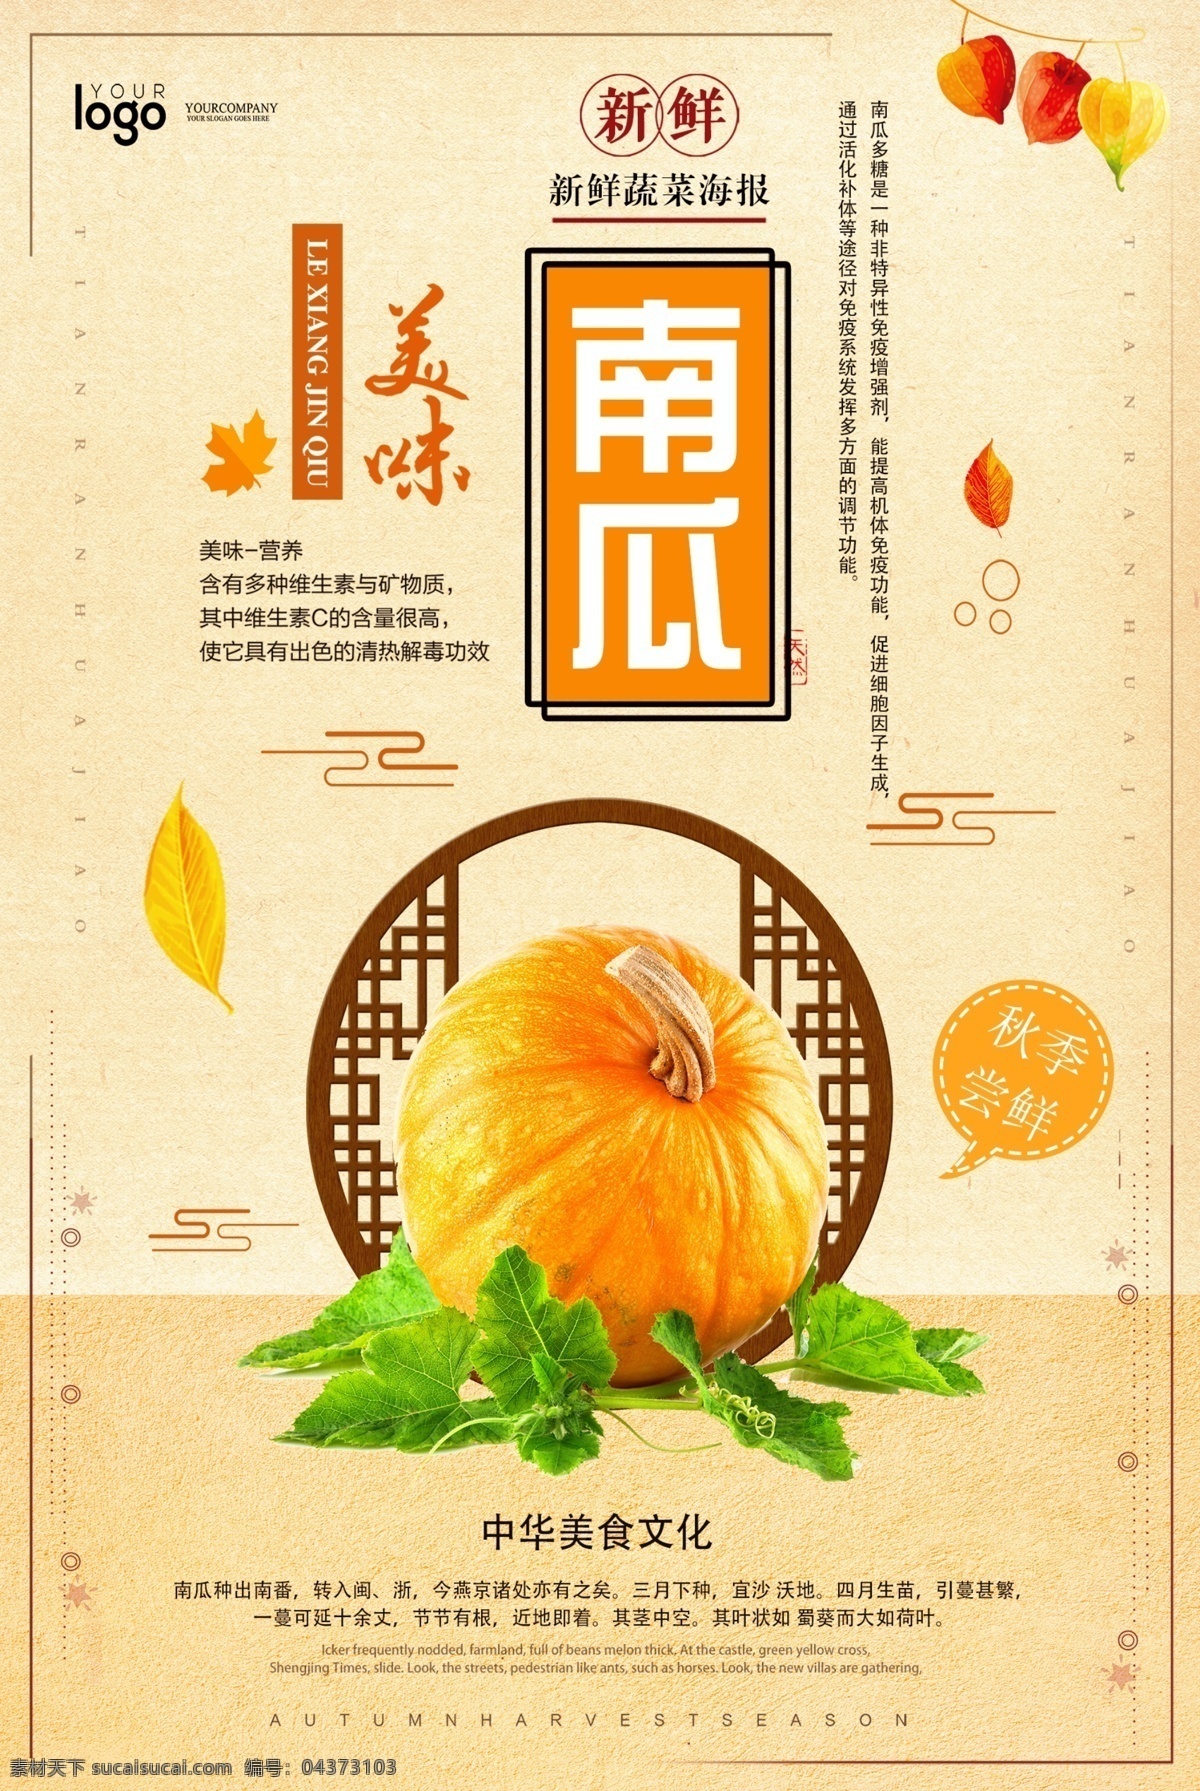 美味南瓜海报 海报 创意海报 美食海报 南瓜 秋季美食 应季蔬菜 蔬菜 食物 秋天 秋季